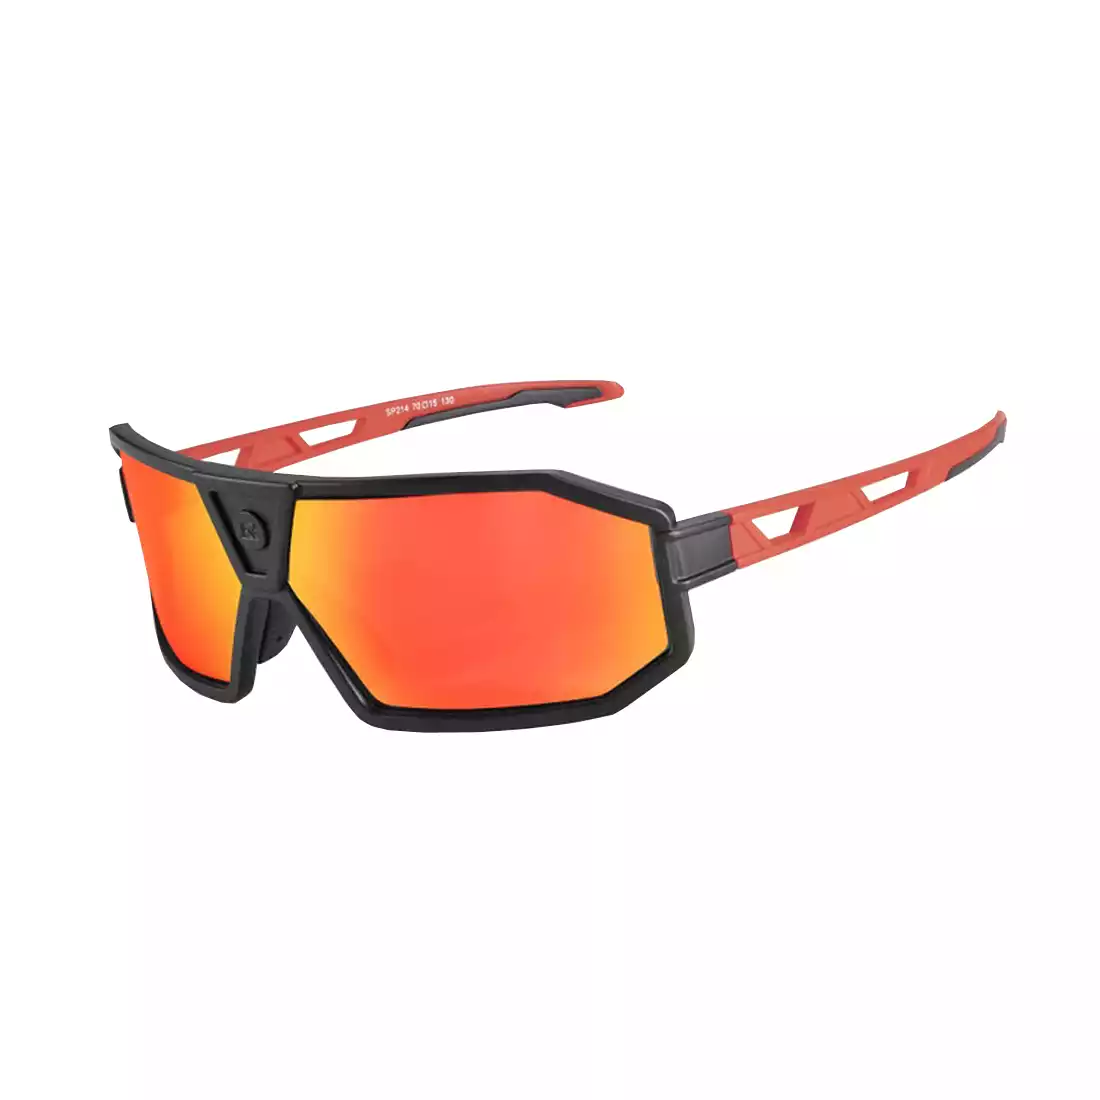 Rockbros SP214BK okulary rowerowe / sportowe z polaryzacją czarno-czerwone